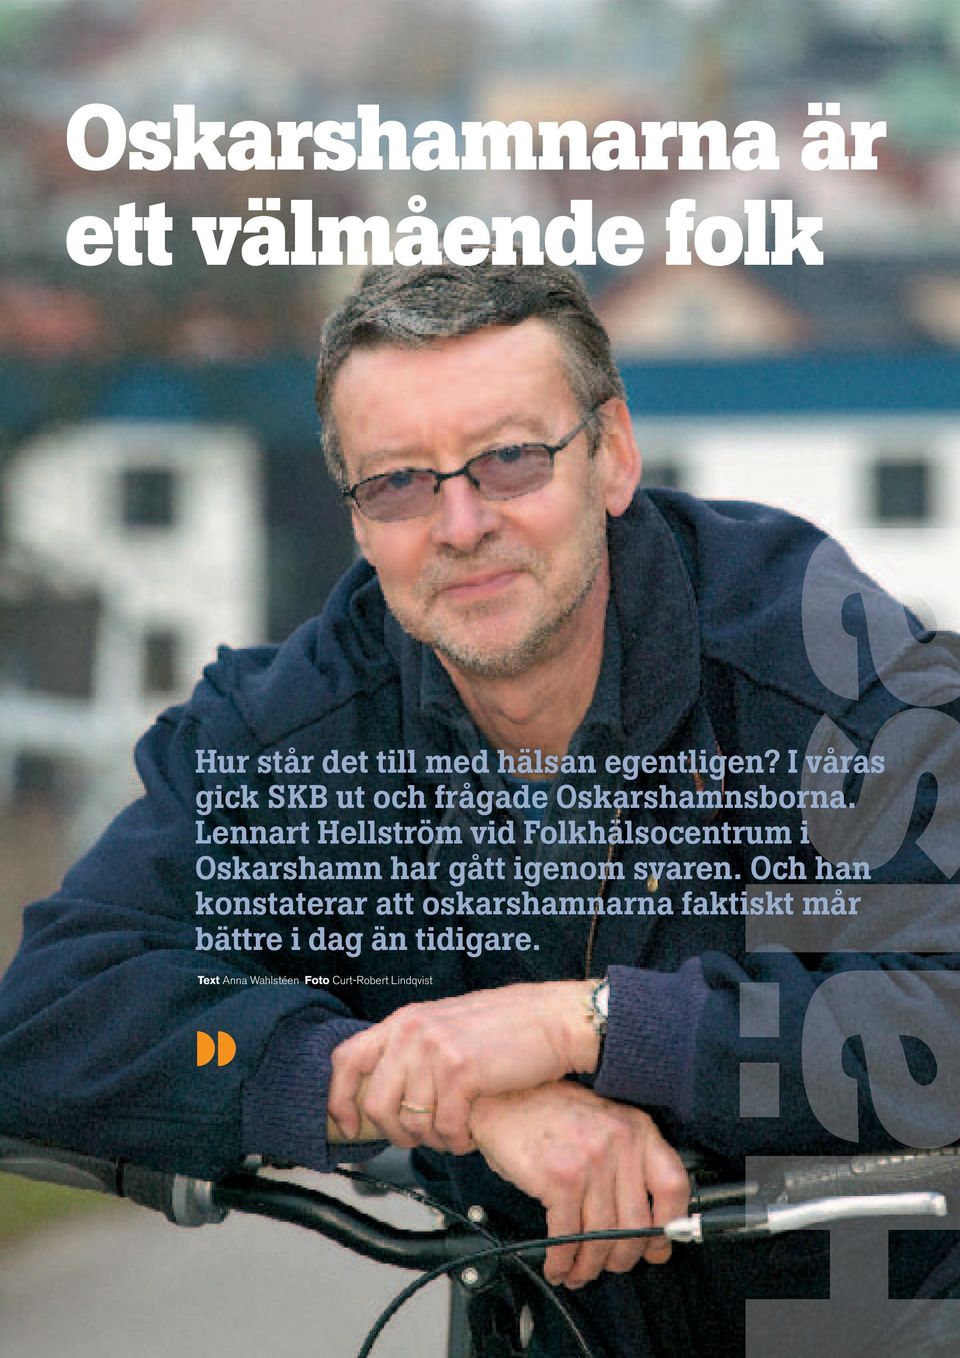 Lennart Hellström vid Folkhälsocentrum i Oskarshamn har gått igenom svaren.